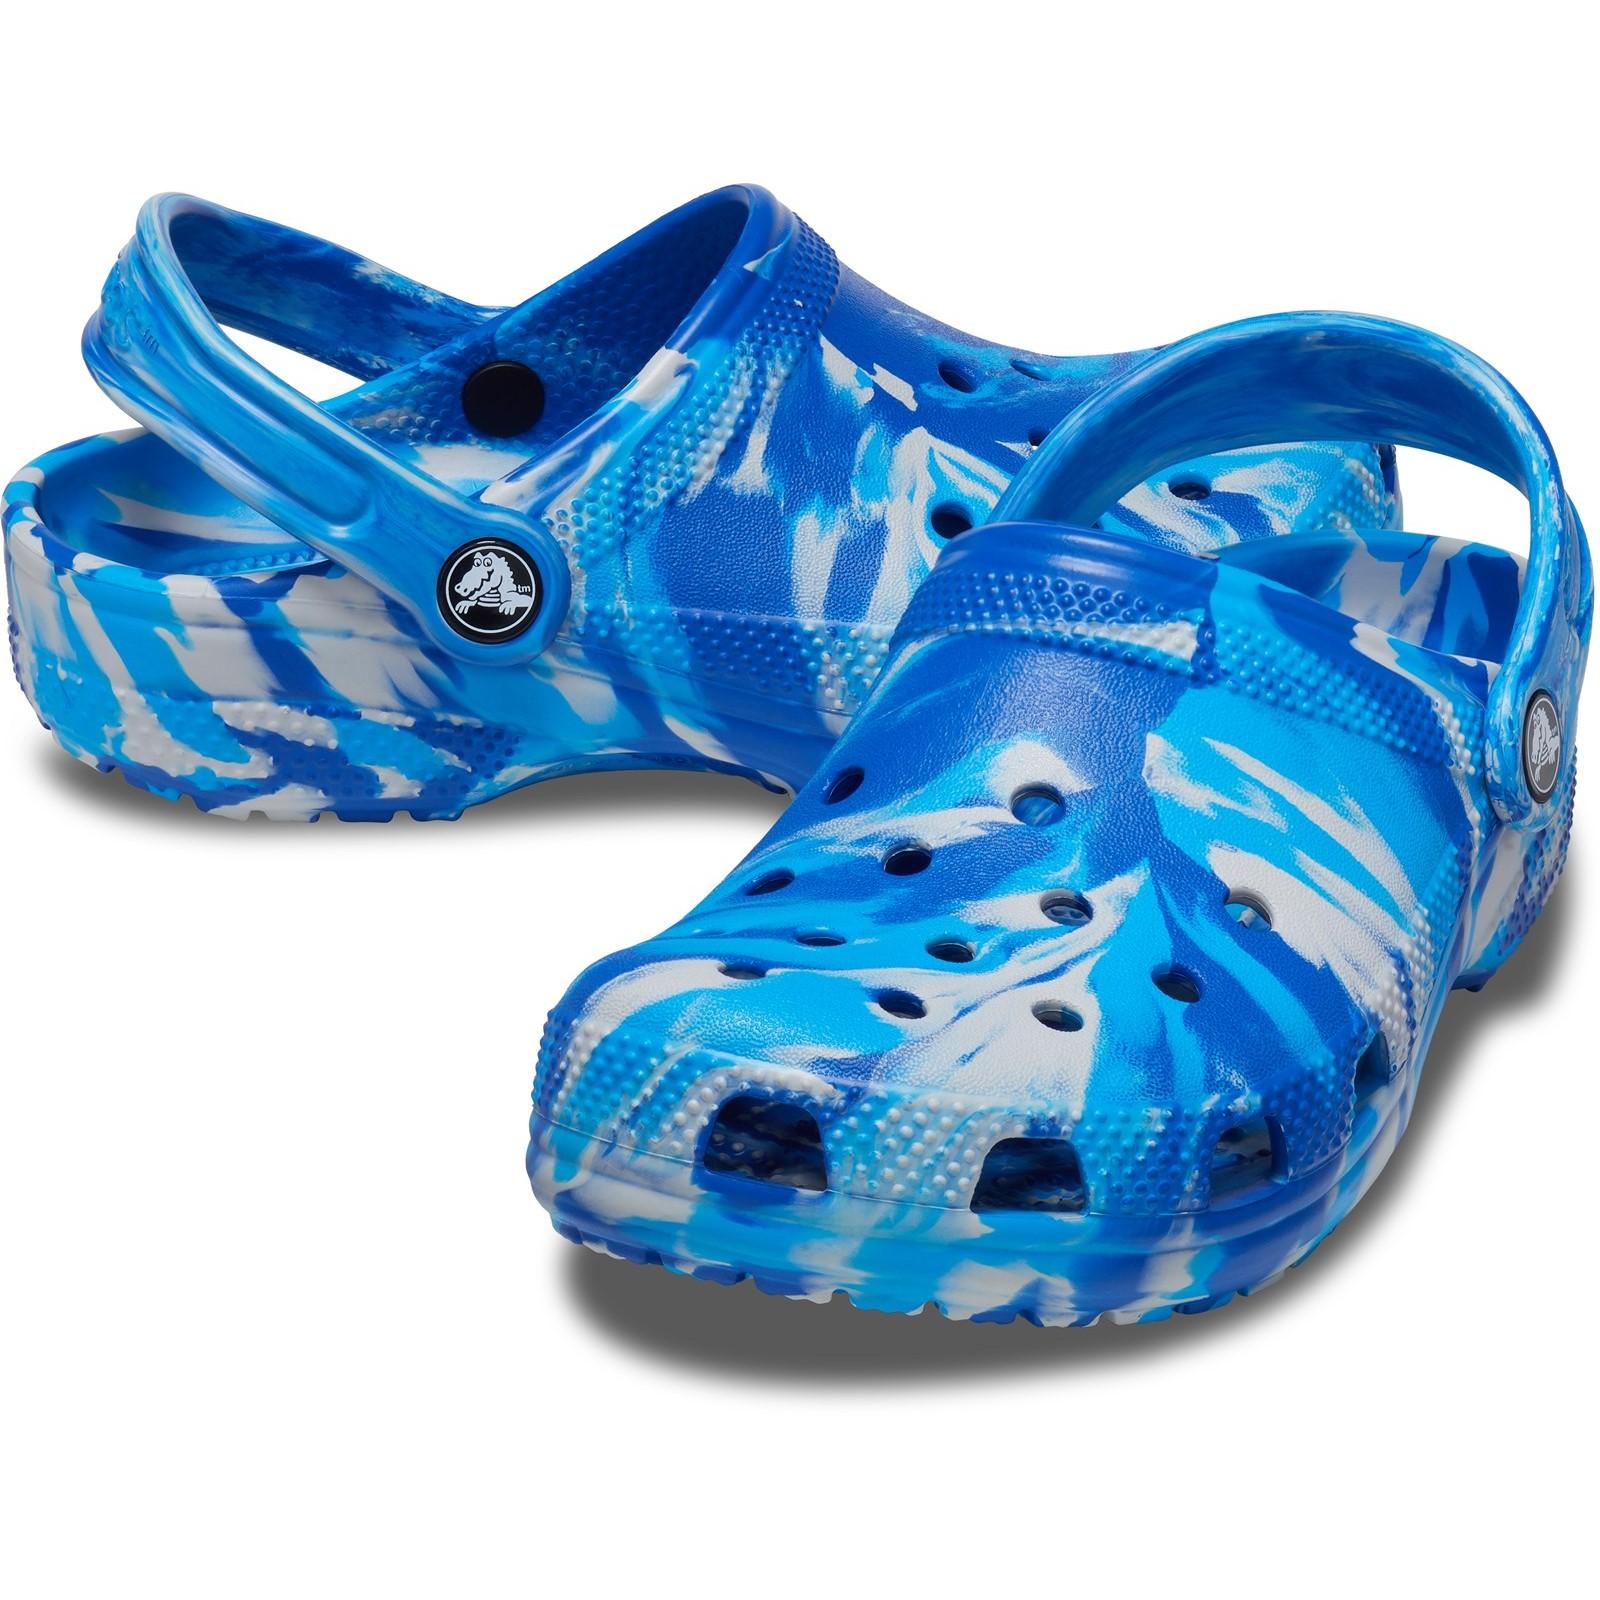 Crocs Classic Marbled Clog Sandals